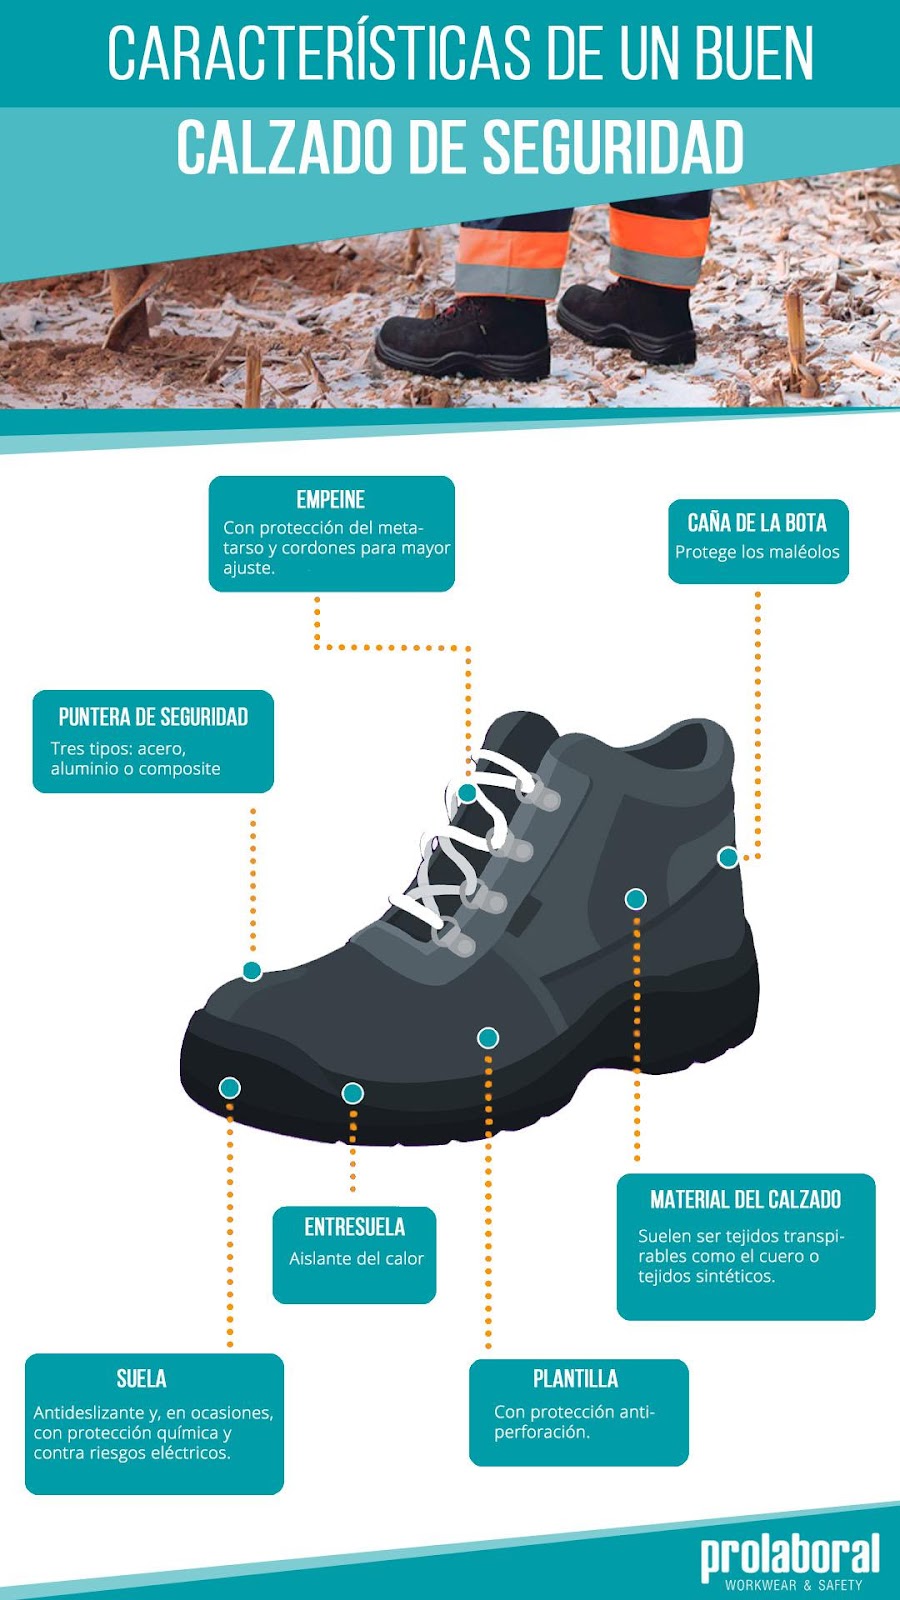 Características clave para elegir un buen calzado de seguridad